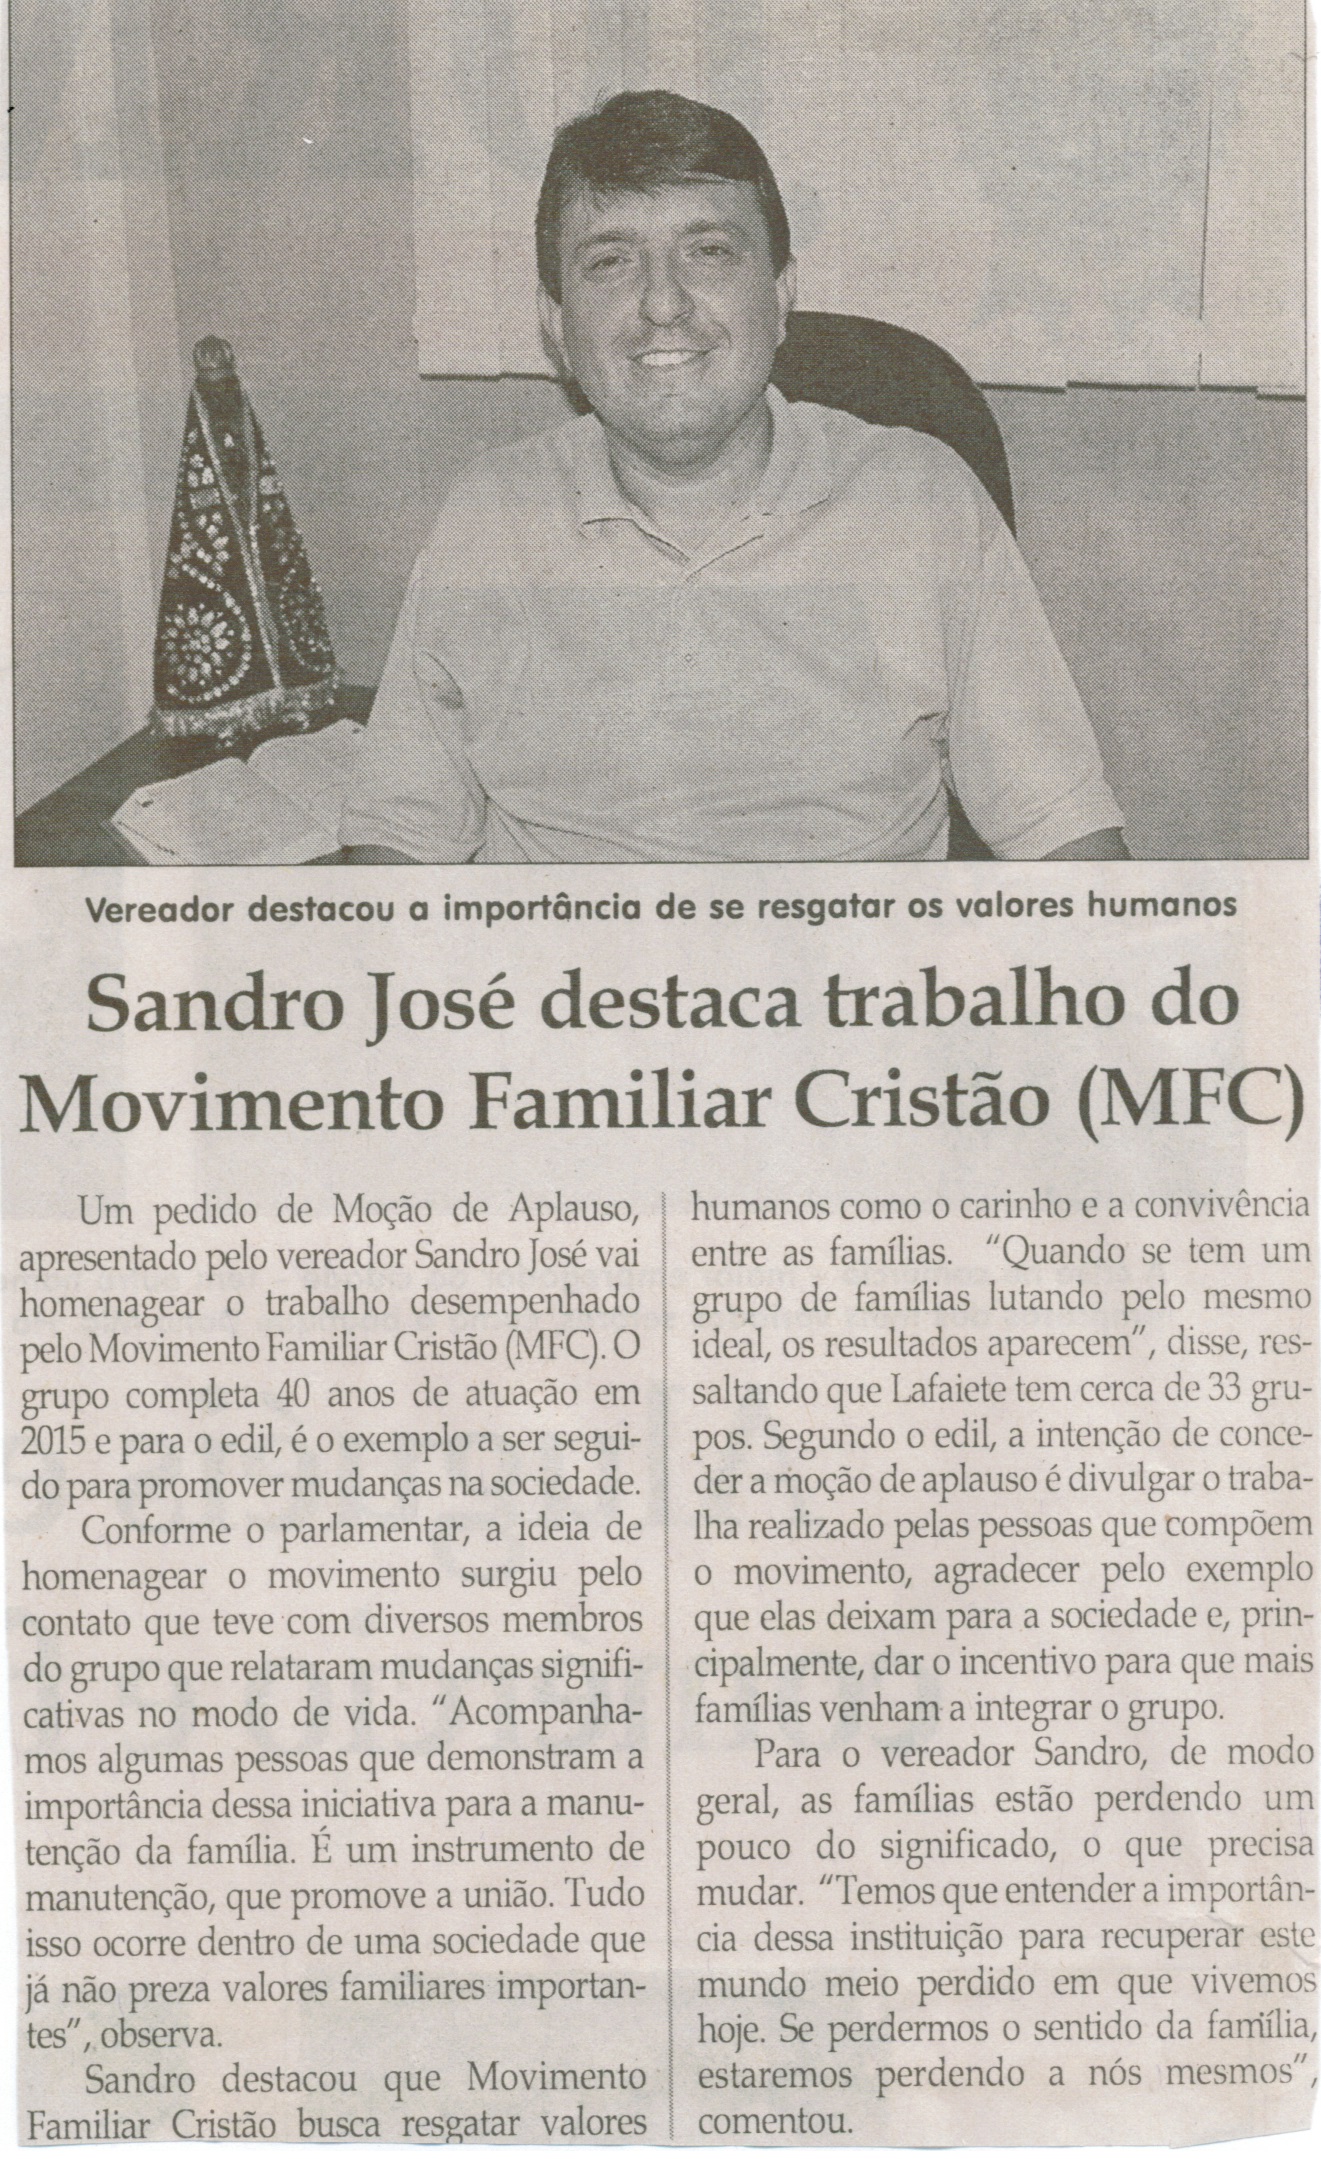 Sandro José destaca trabalho do Movimento Familiar Cristão (MFC). Jornal Correio da Cidade, Conselheiro Lafaiete, 14 mar. 2015, p. 02.